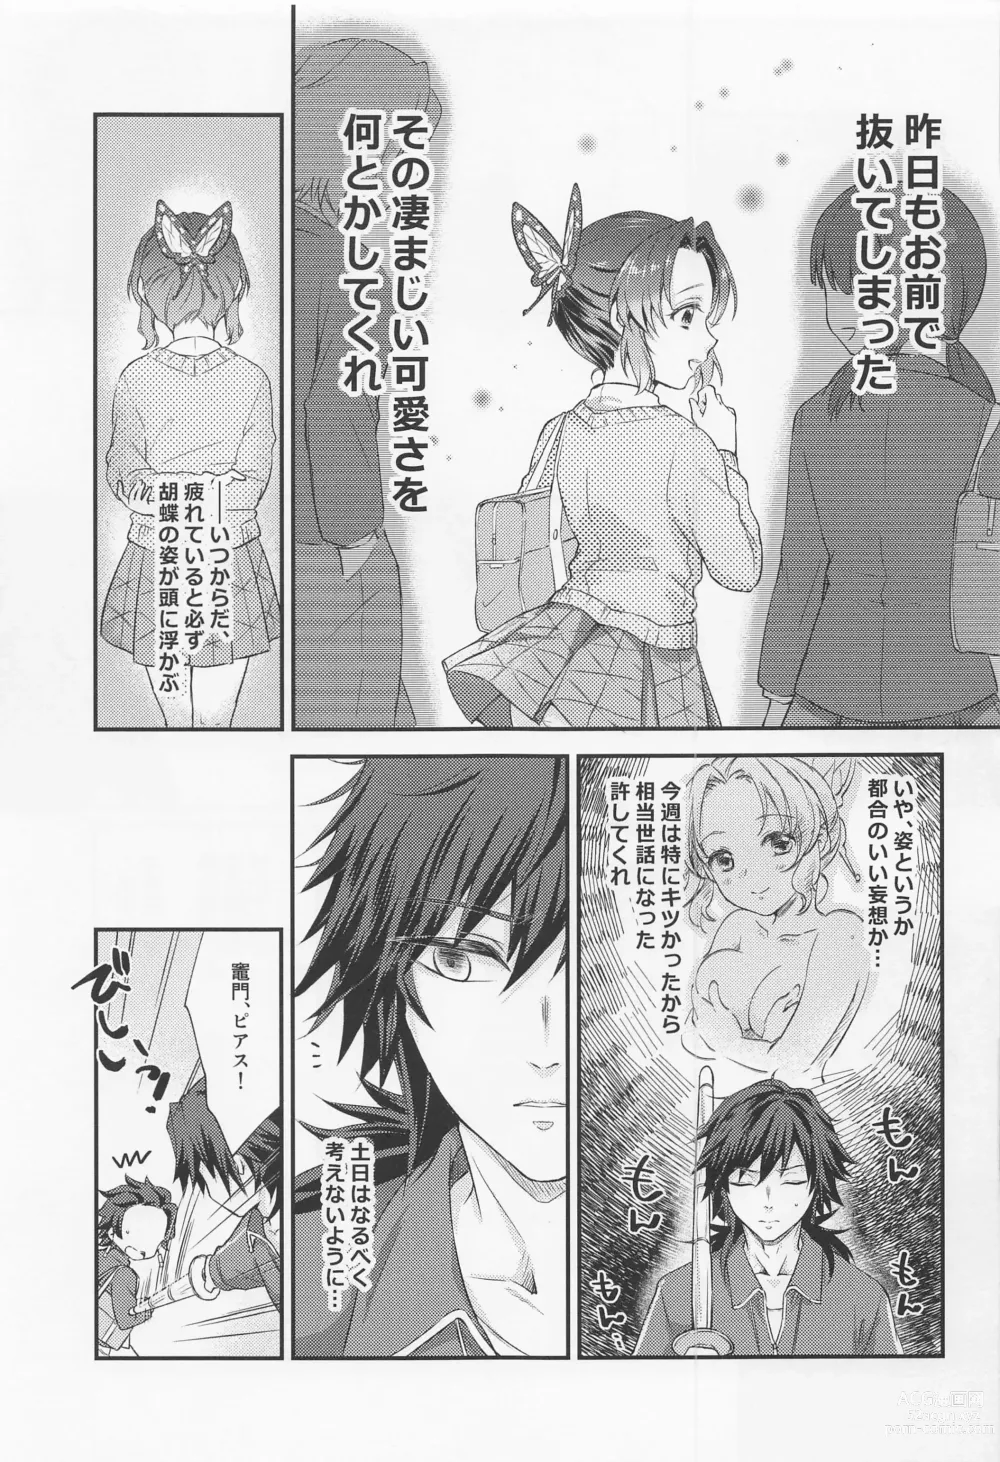 Page 6 of doujinshi Amakara Oxymoron